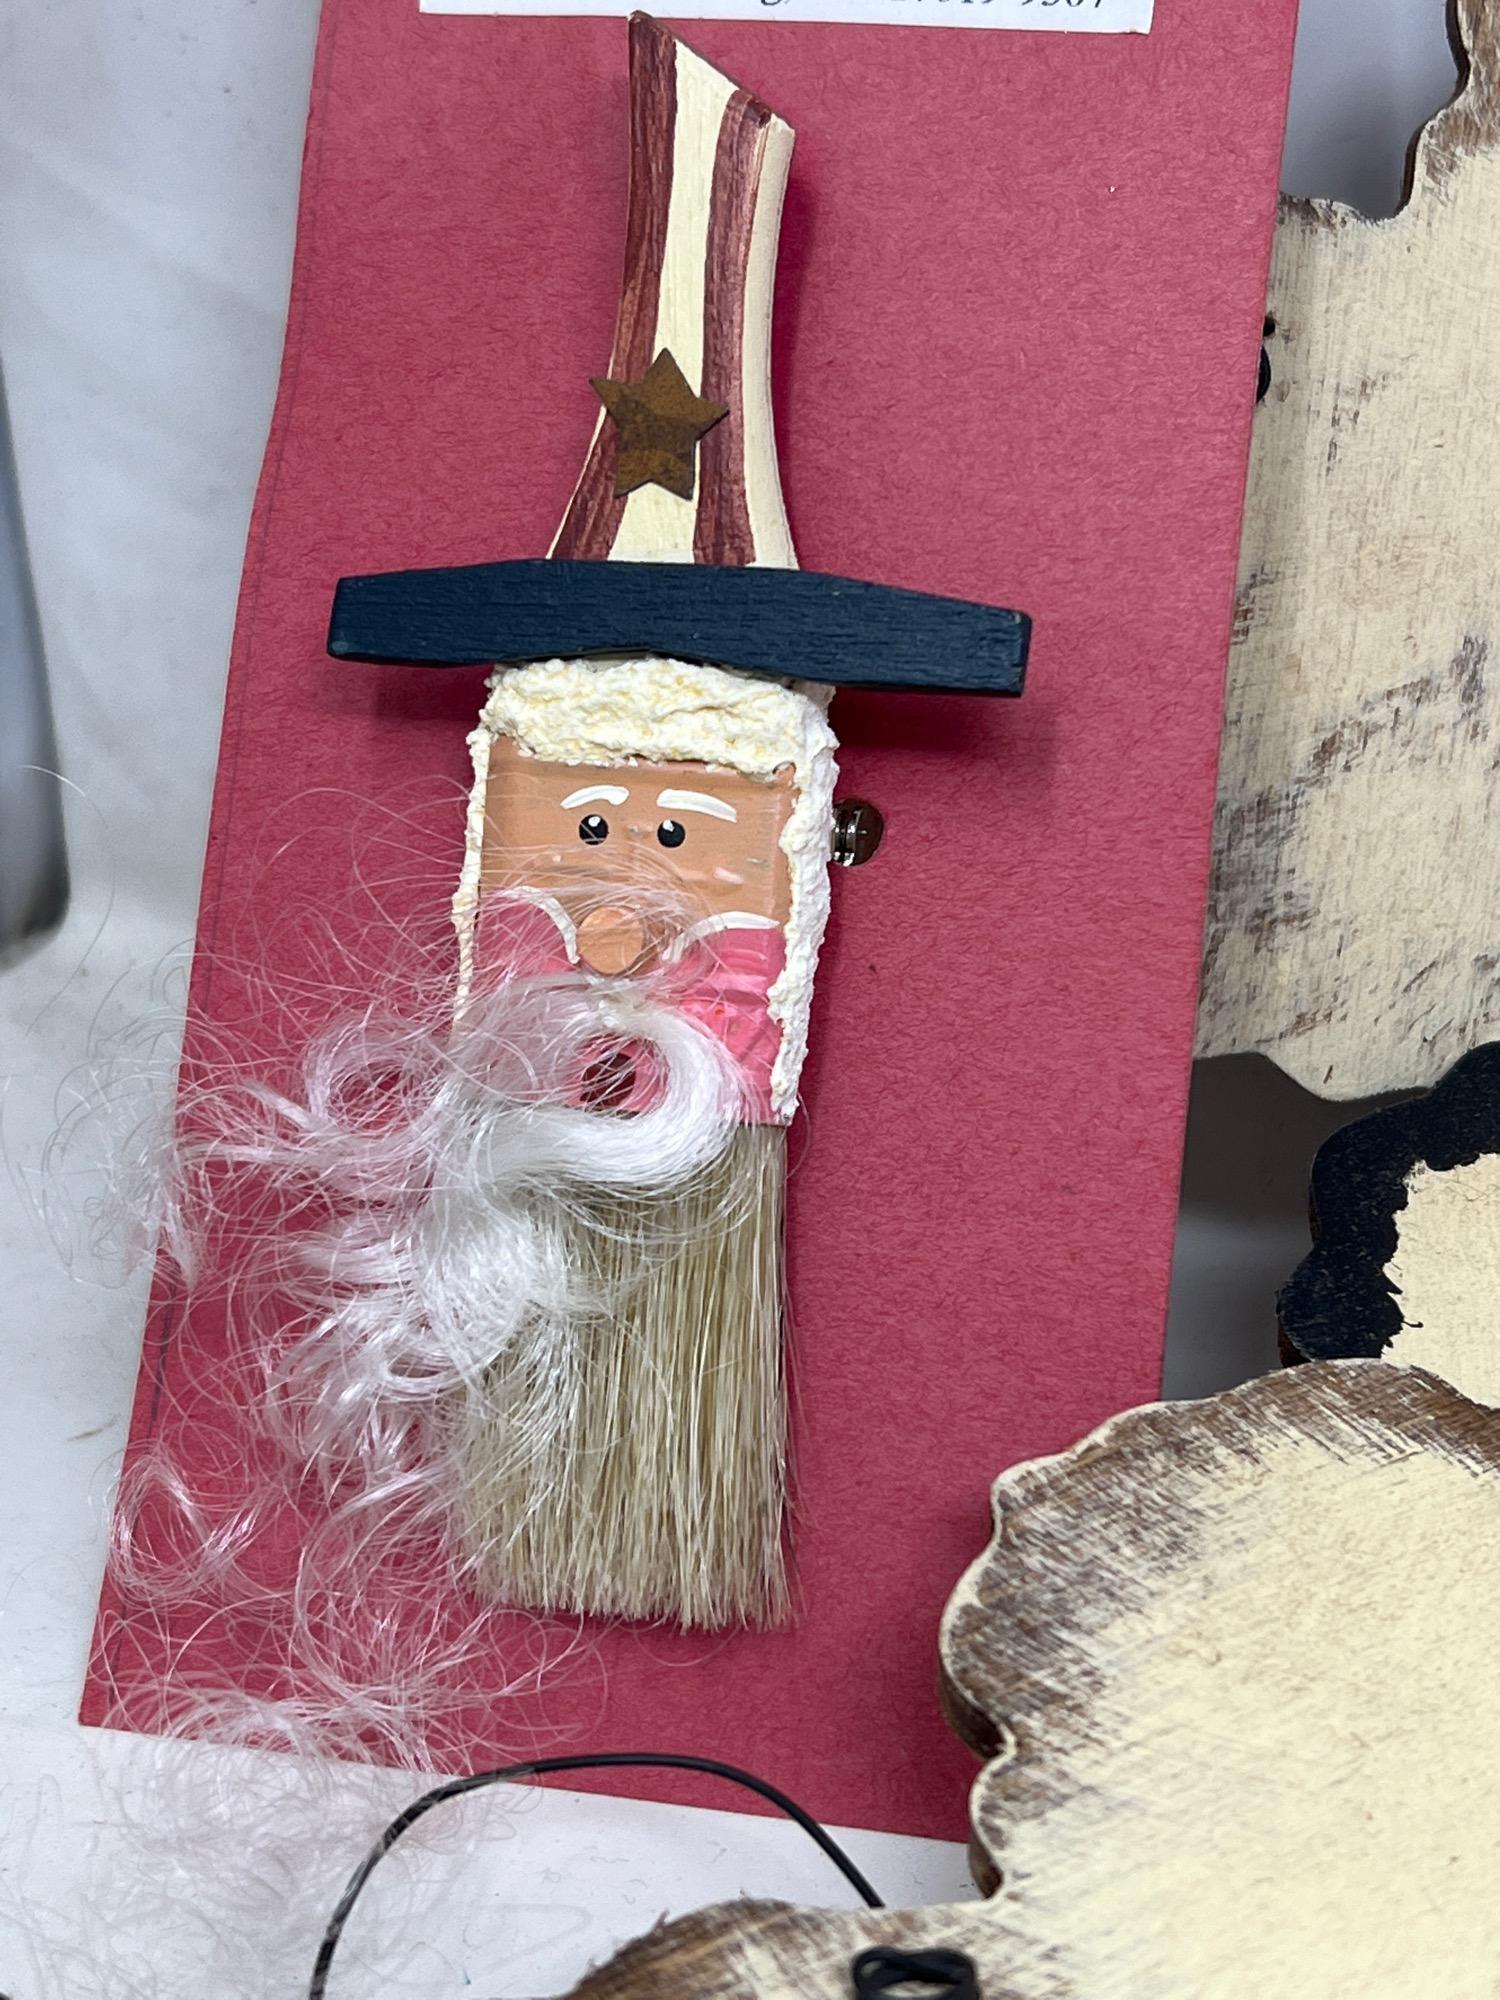 Wooden Sheep Ornaments. Light Bulb Pin Backs and Patriotic Santa Paintbrush Pin Backs